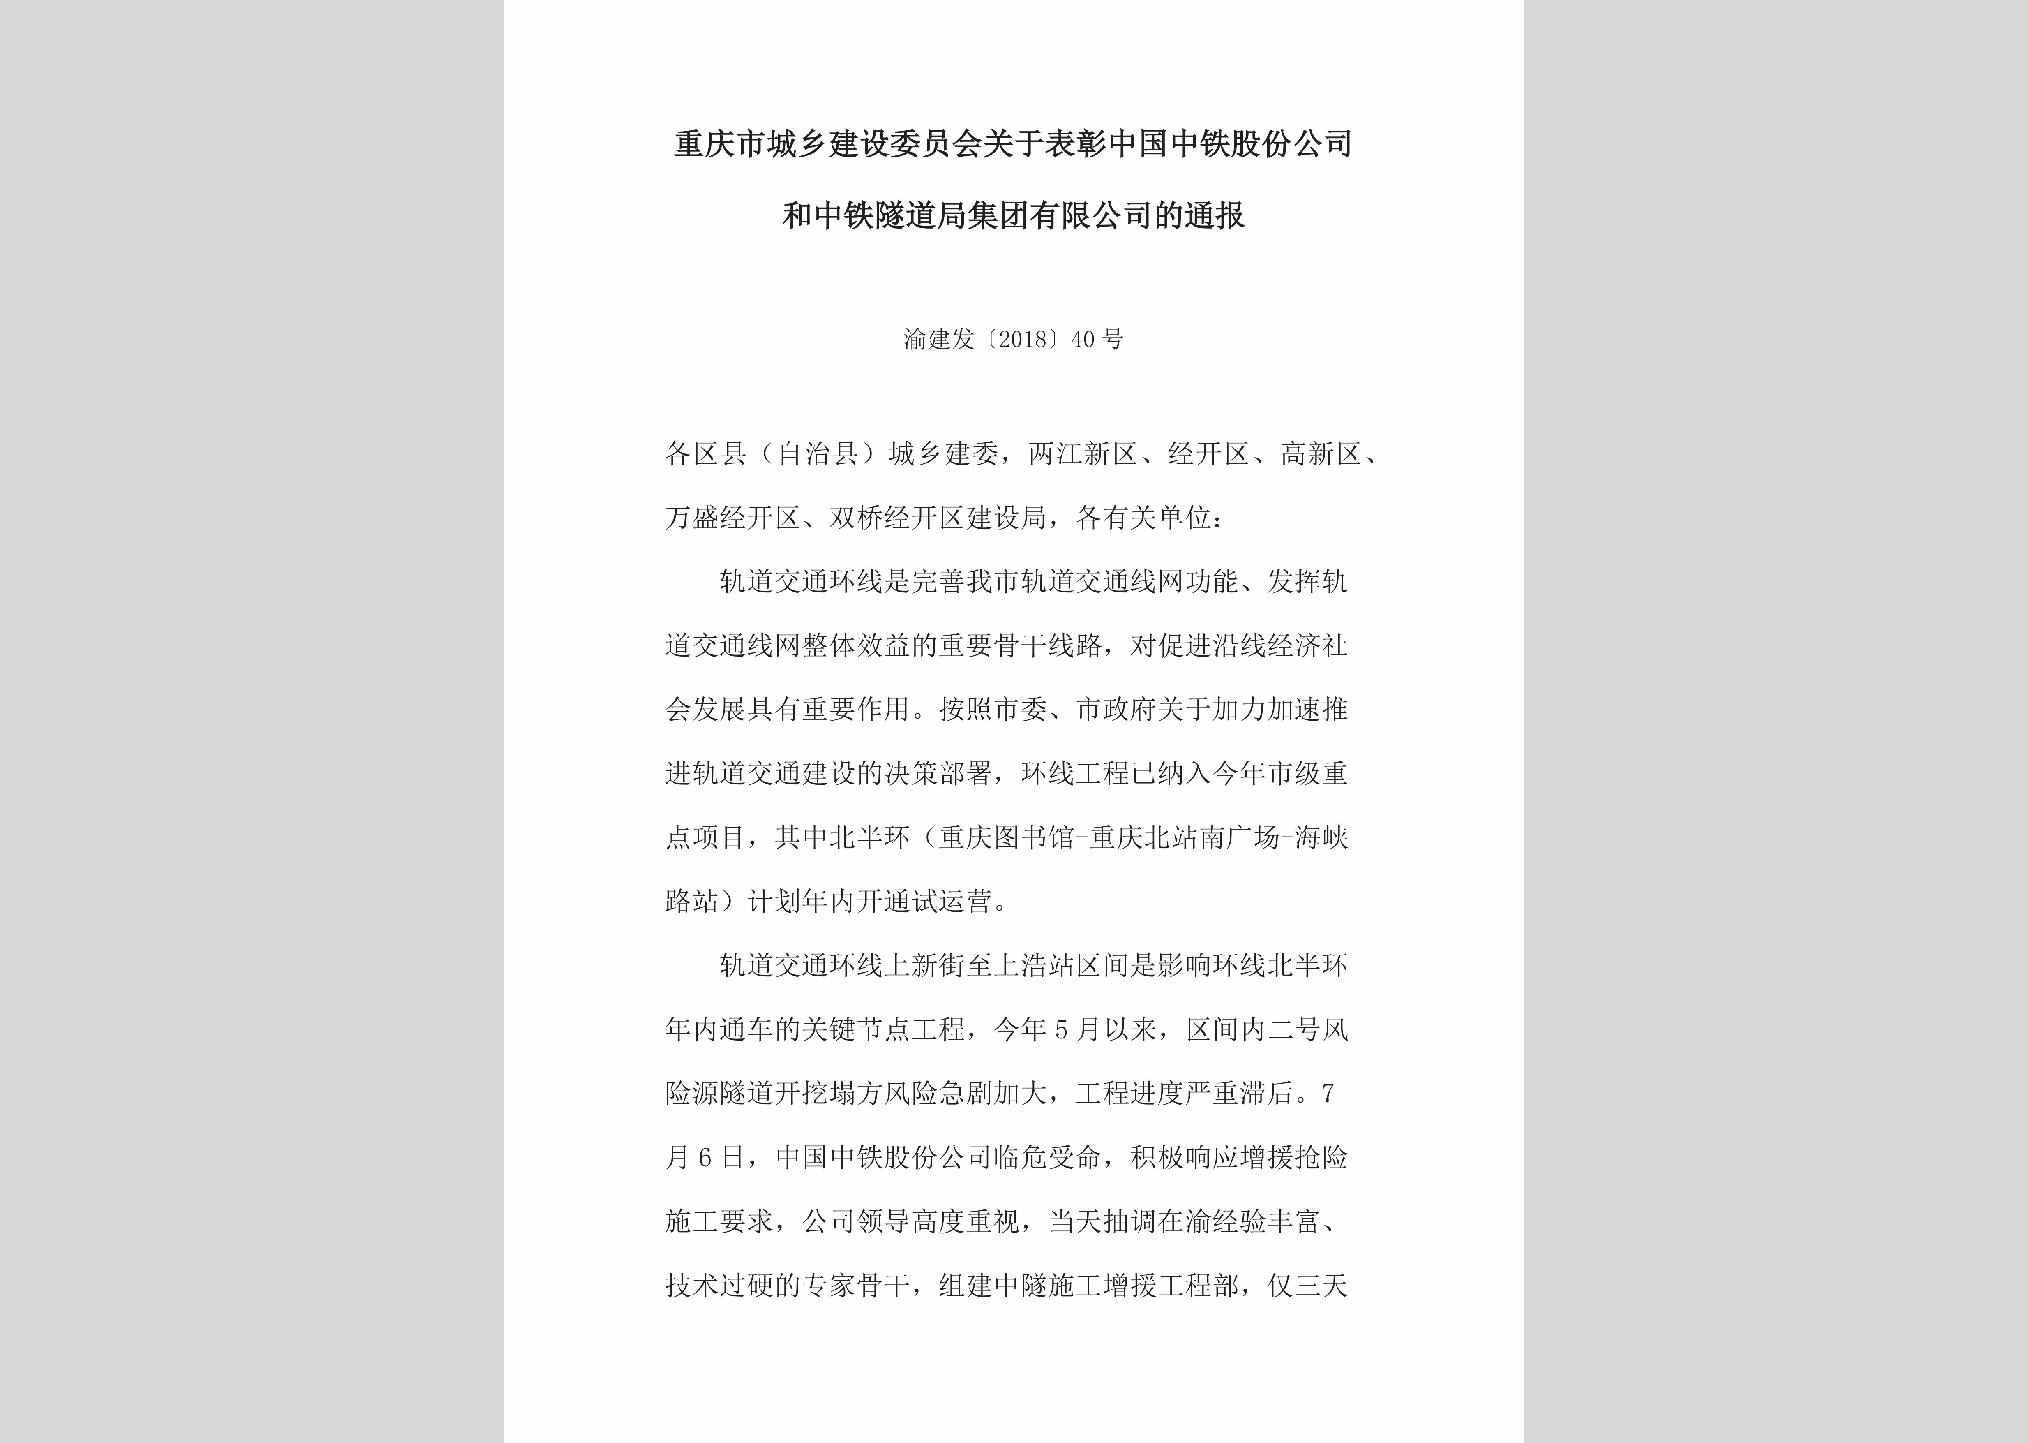 渝建发[2018]40号：关于表彰中国中铁股份公司和中铁隧道局集团有限公司的通报